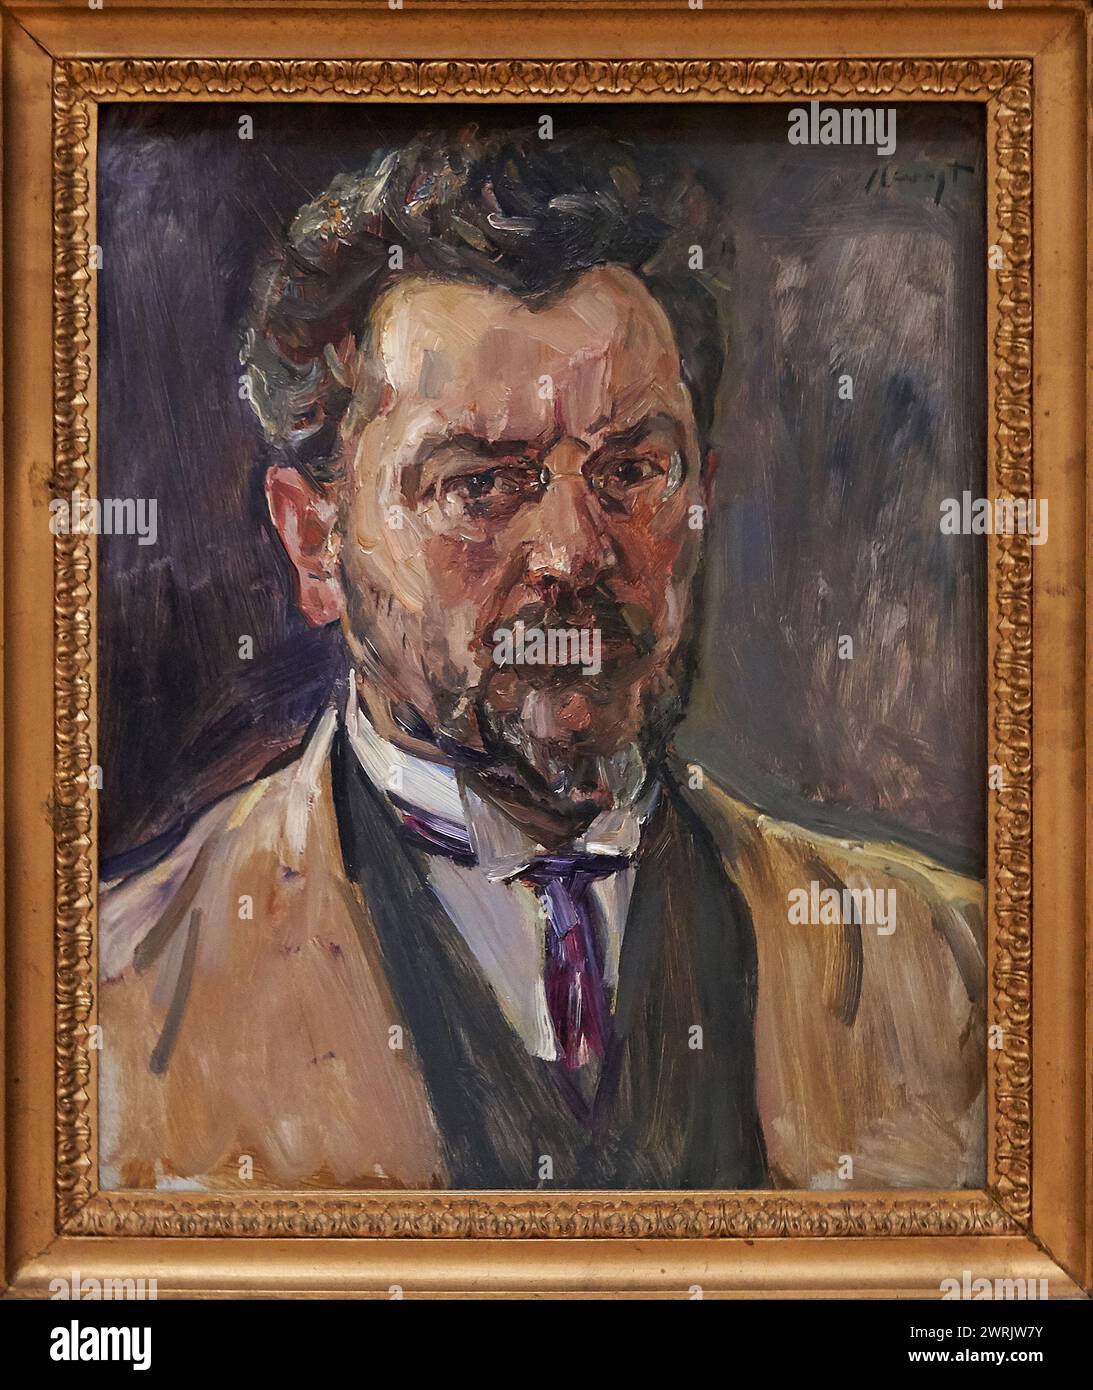 'Autoportrait', 1916, Max Slevogt (1868-1932), Musée Guggenheim Bilbao, Bilbao, pays Basque, Espagne, Europe. Banque D'Images